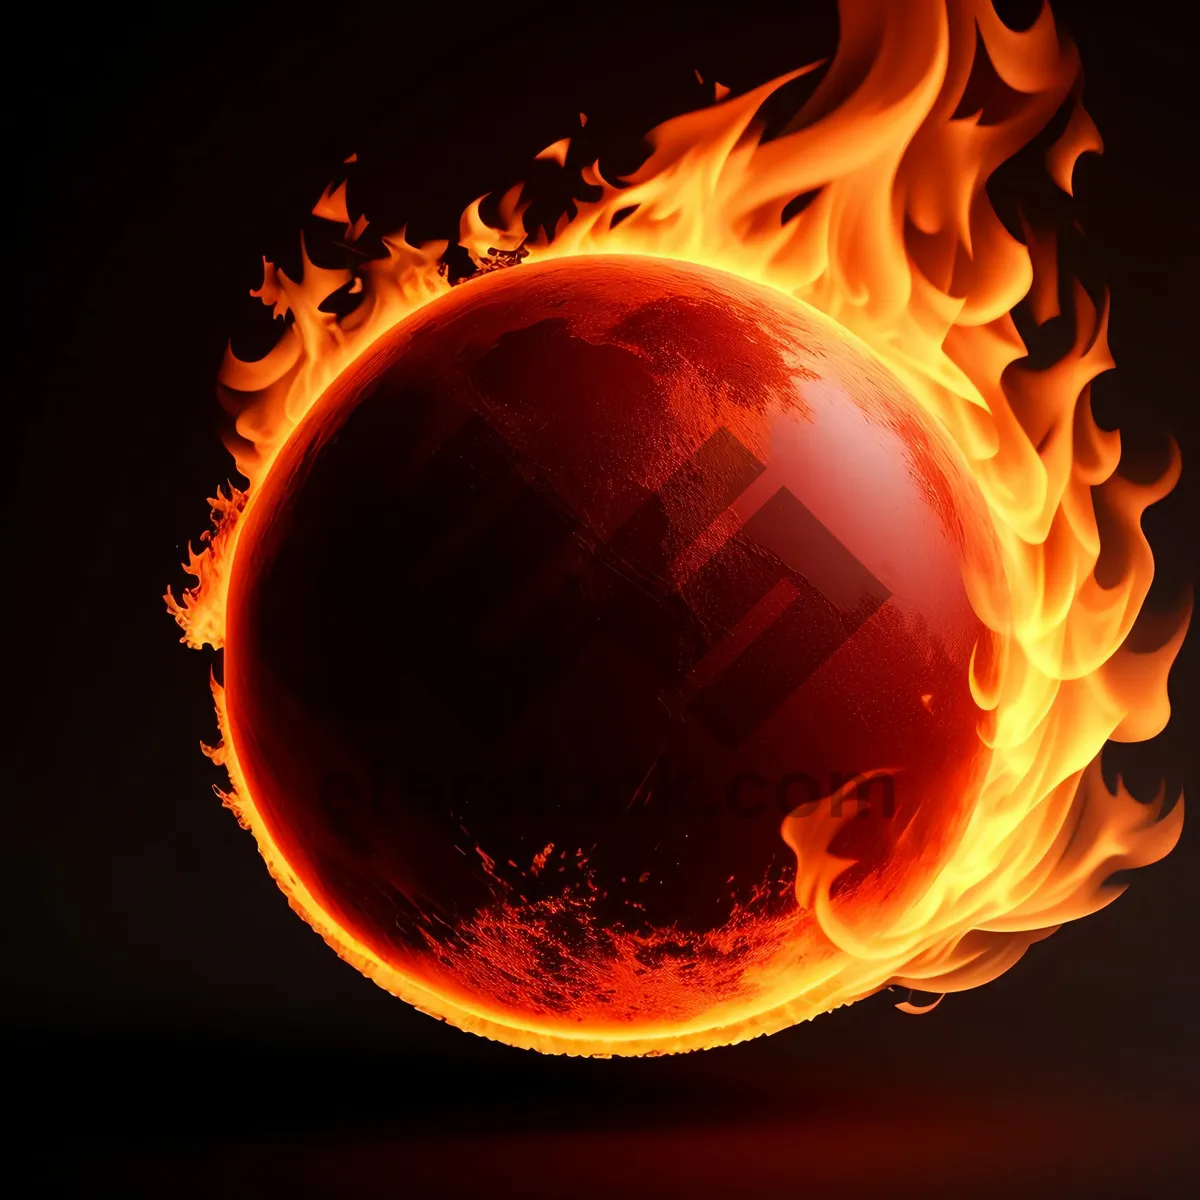 Picture of Fierce Inferno - Fiery Glow of Hell